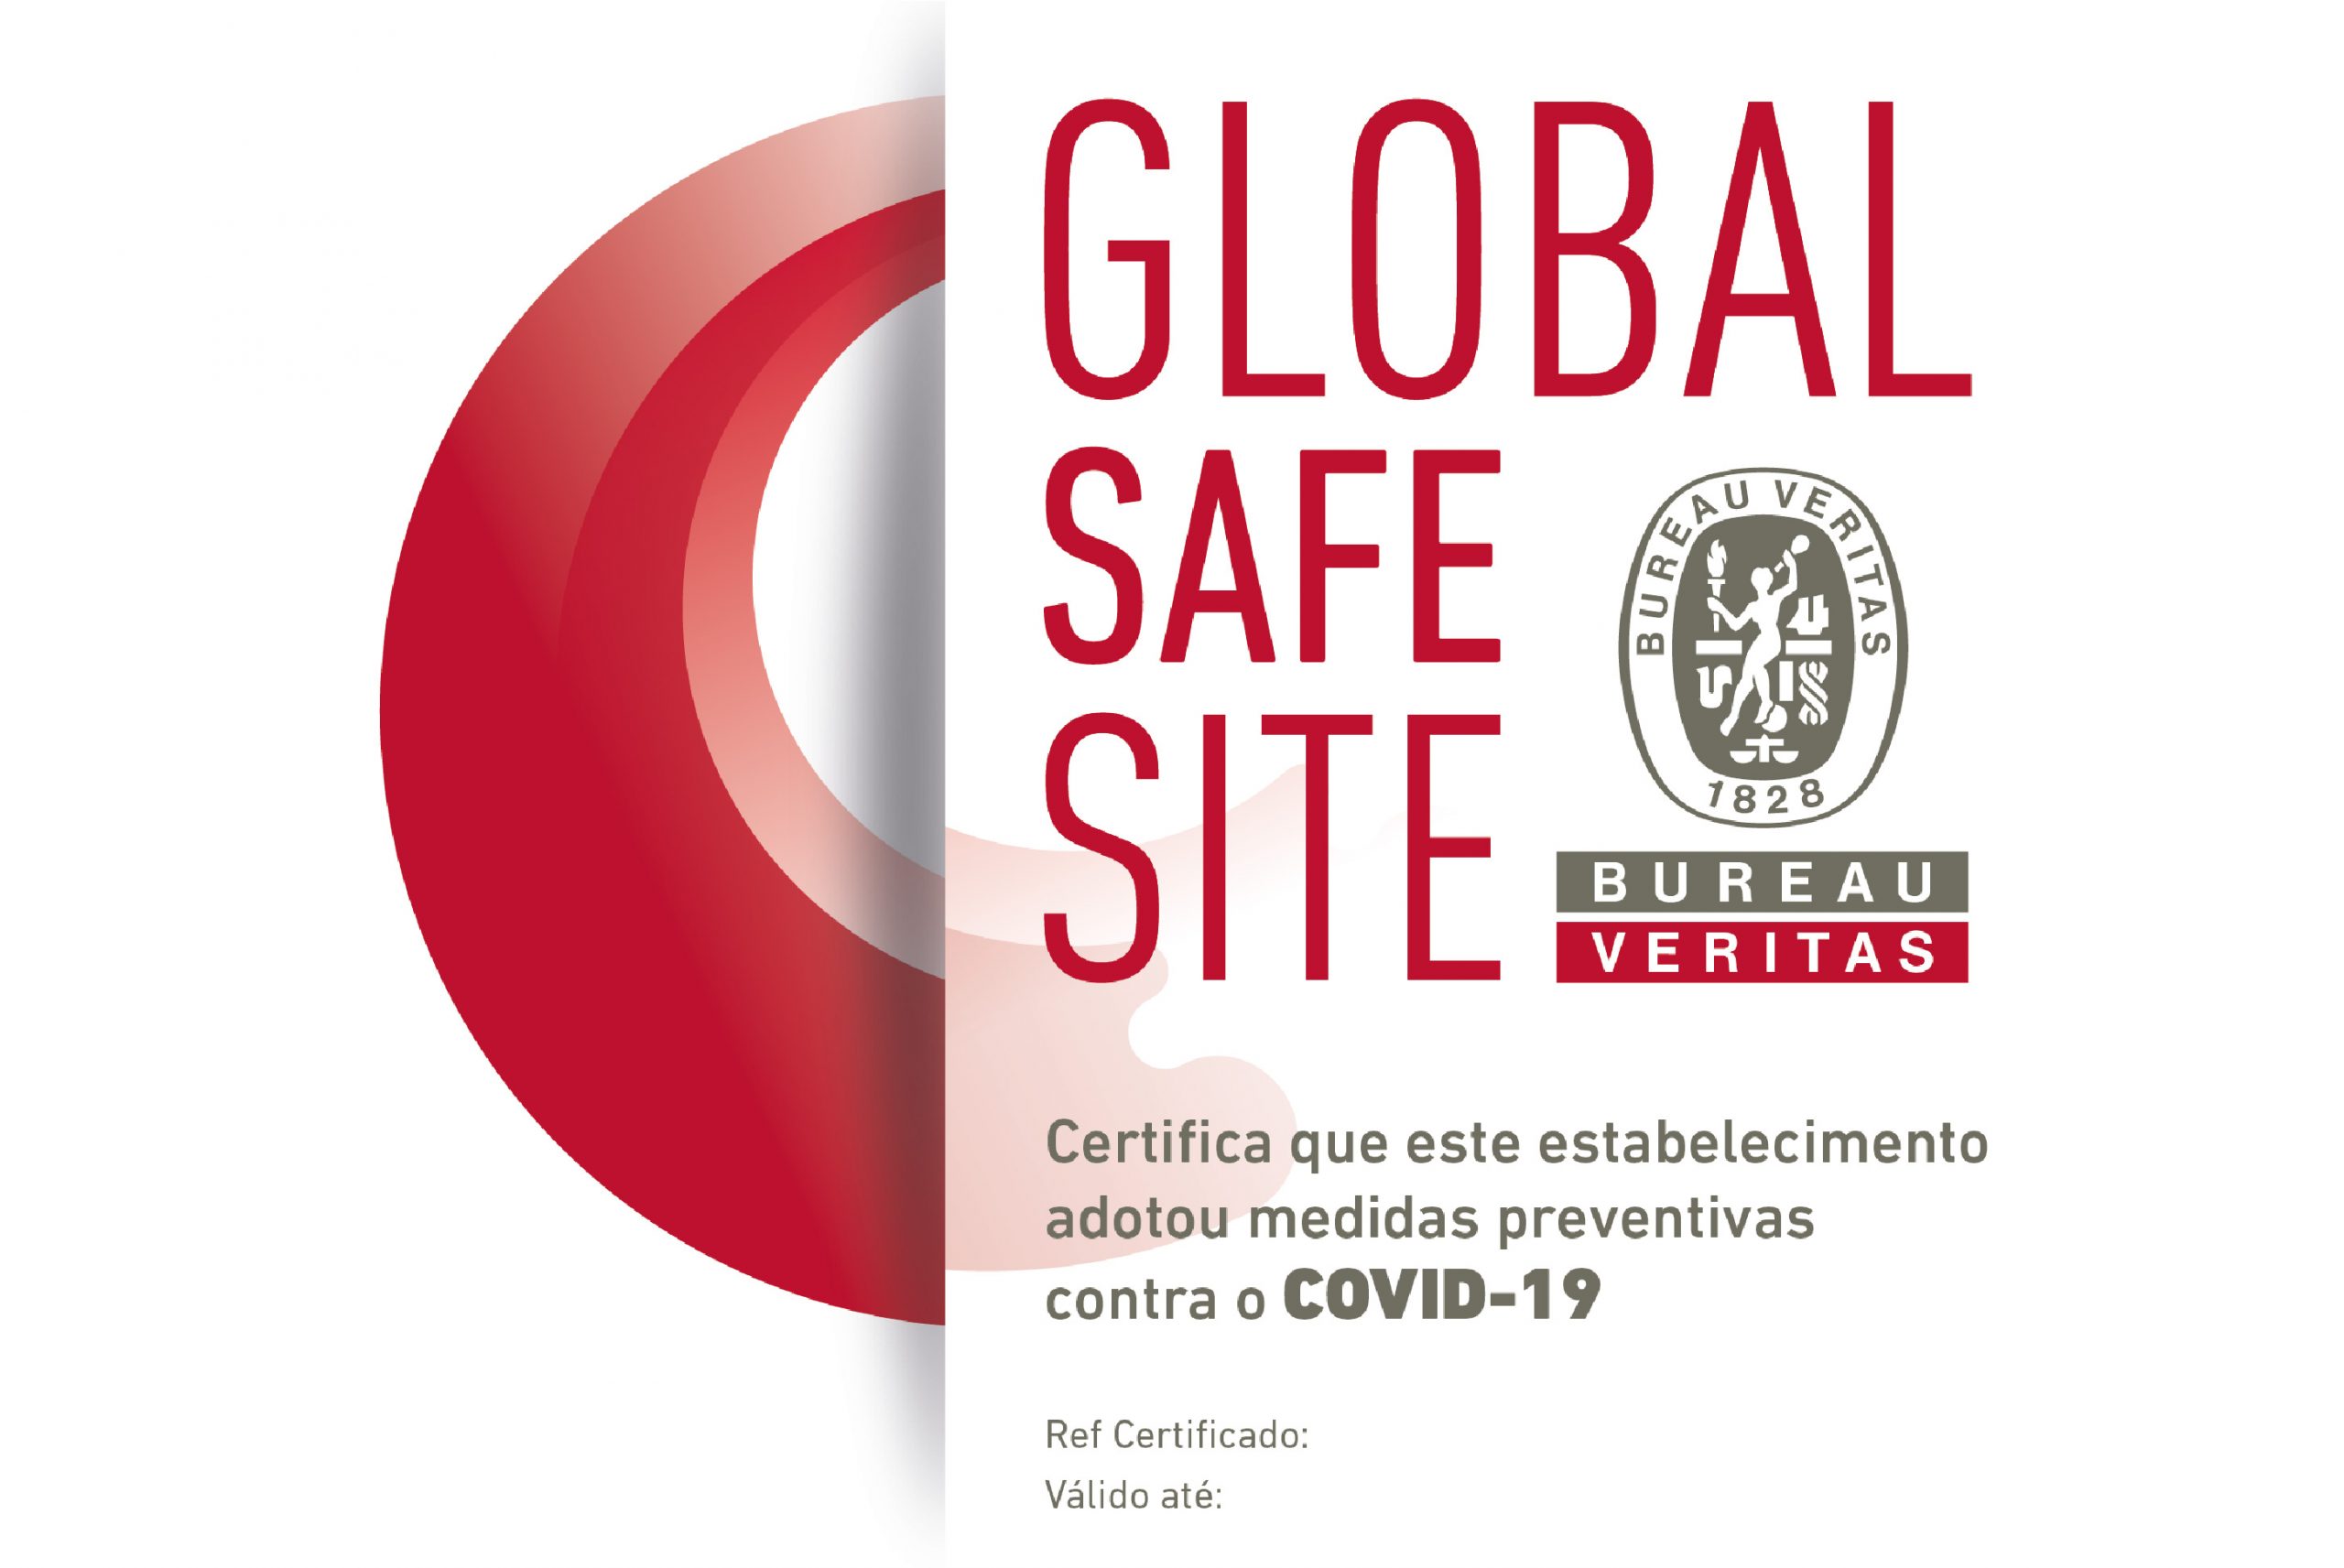 woestenij Onafhankelijk Op grote schaal Multi Iberia awarded Global Safe Site Certification by Bureau Veritas -  Multi Corporation